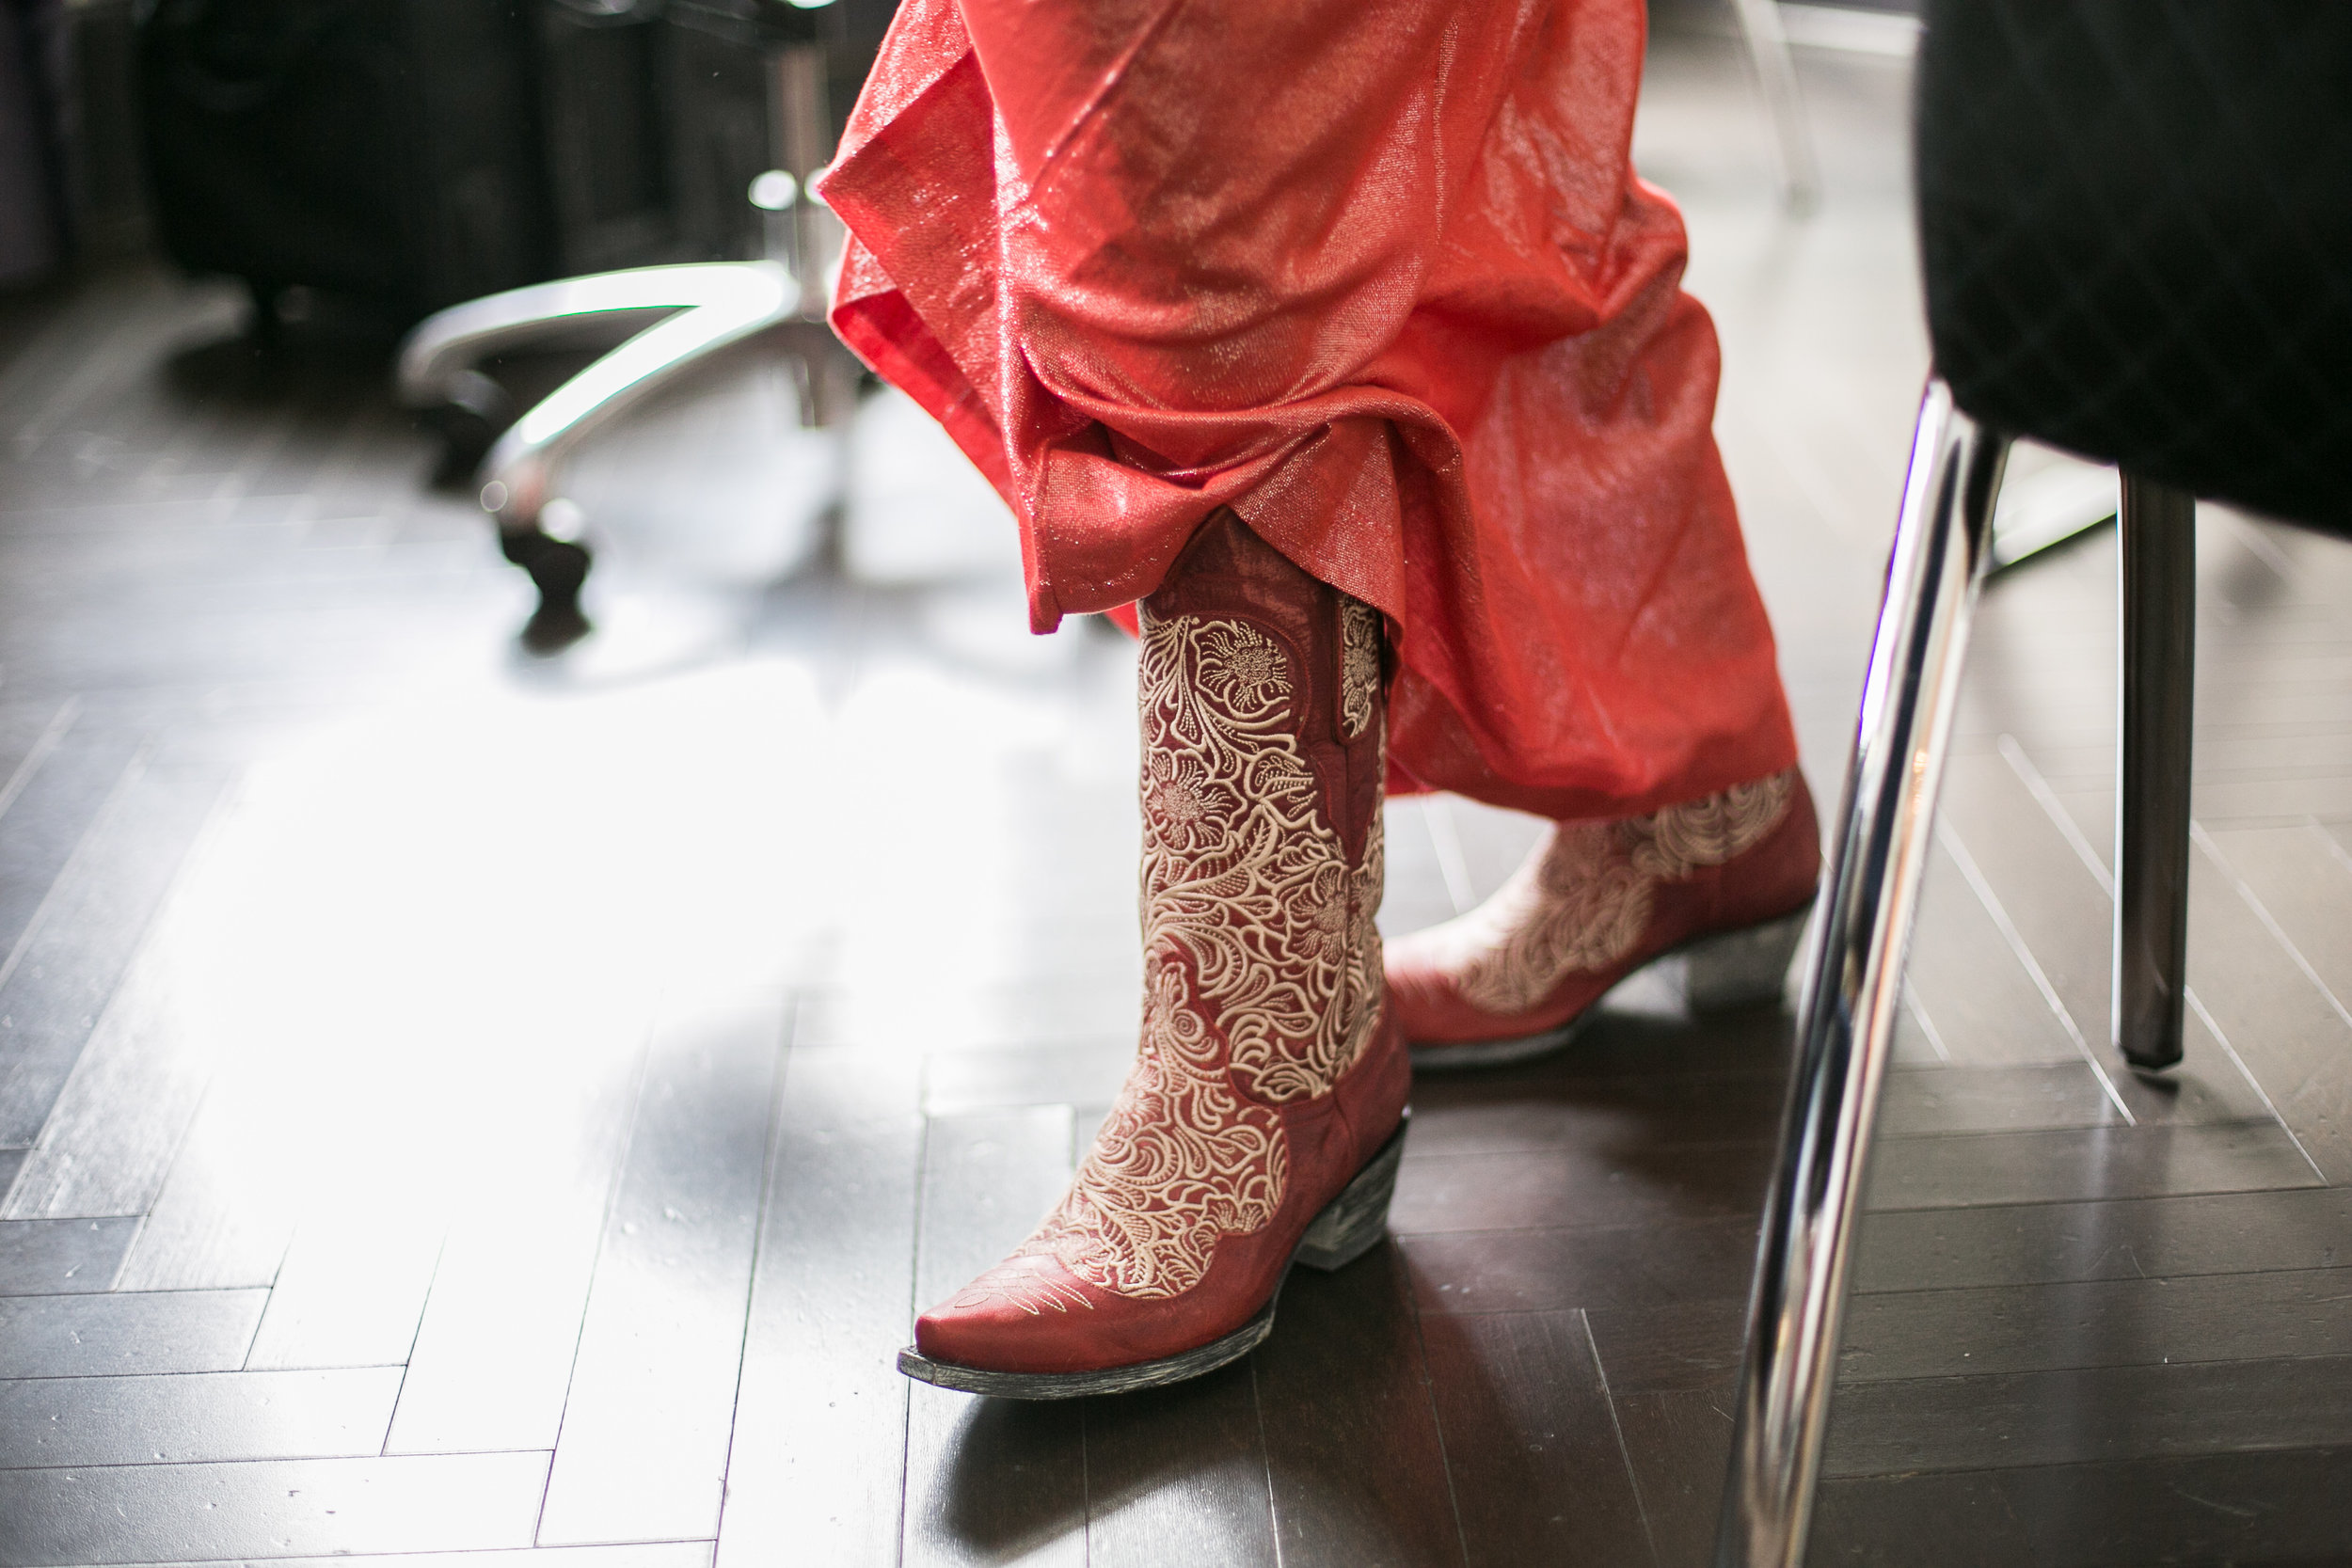 bridal cowboy boots